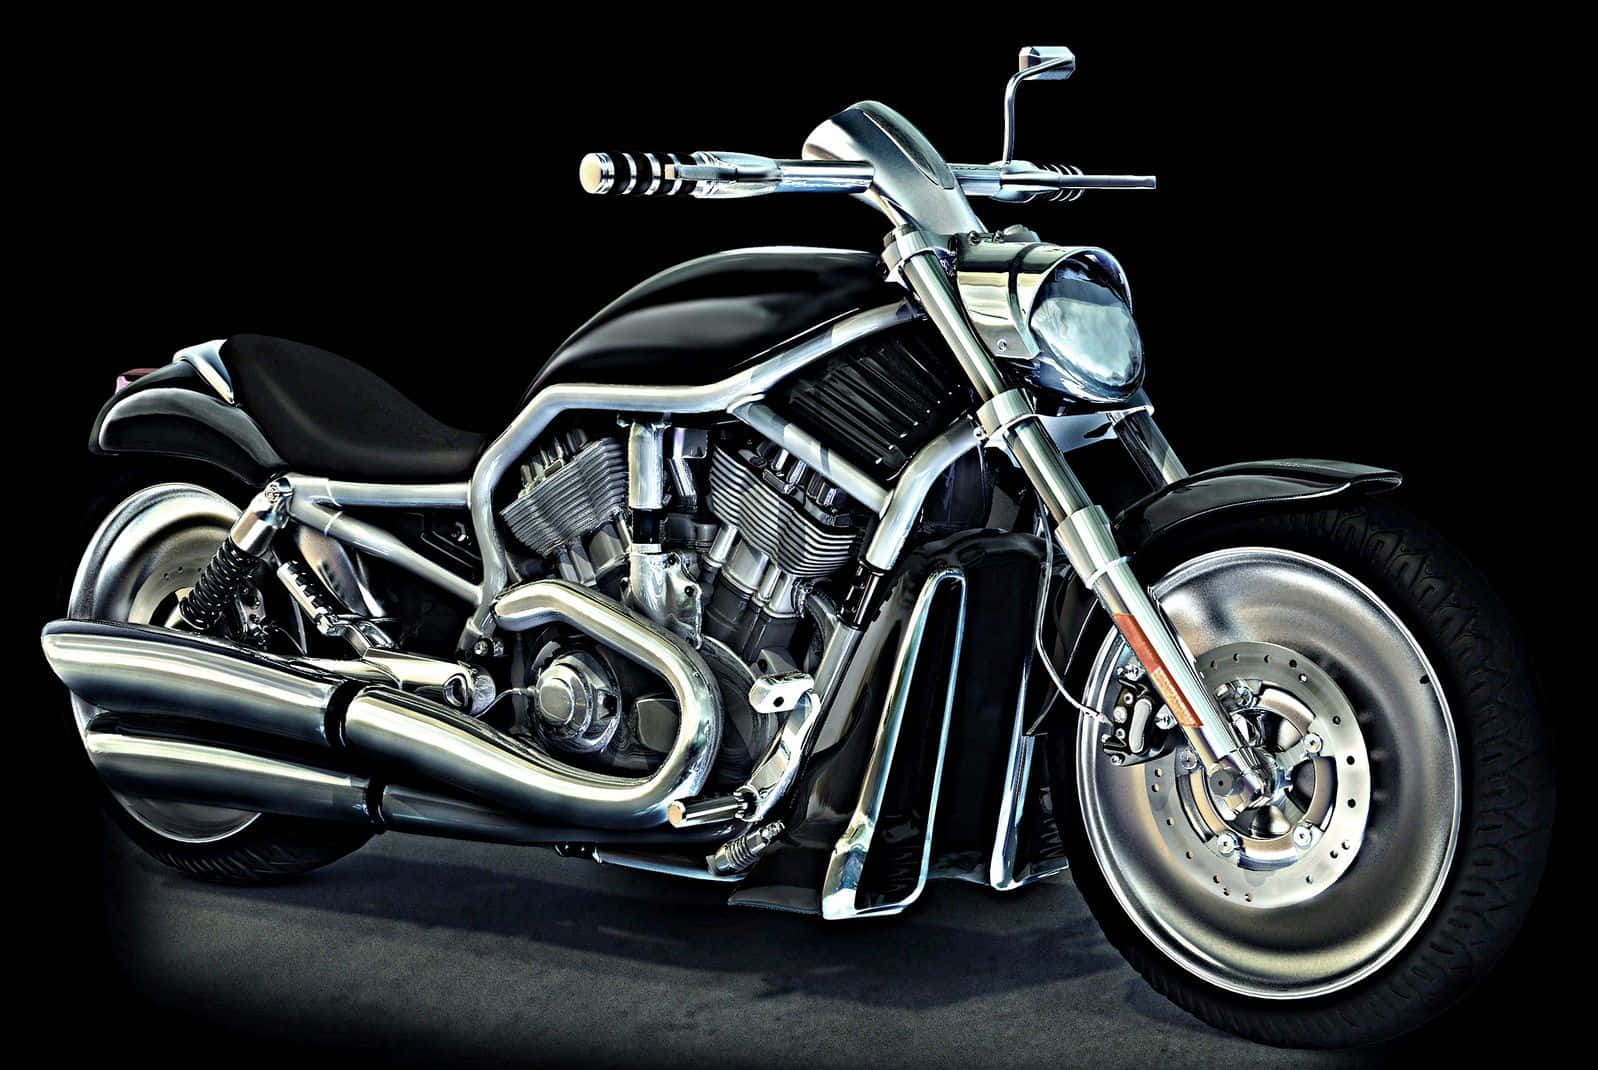 Eineikonische Fahrt - Harley Davidson Hd Wallpaper